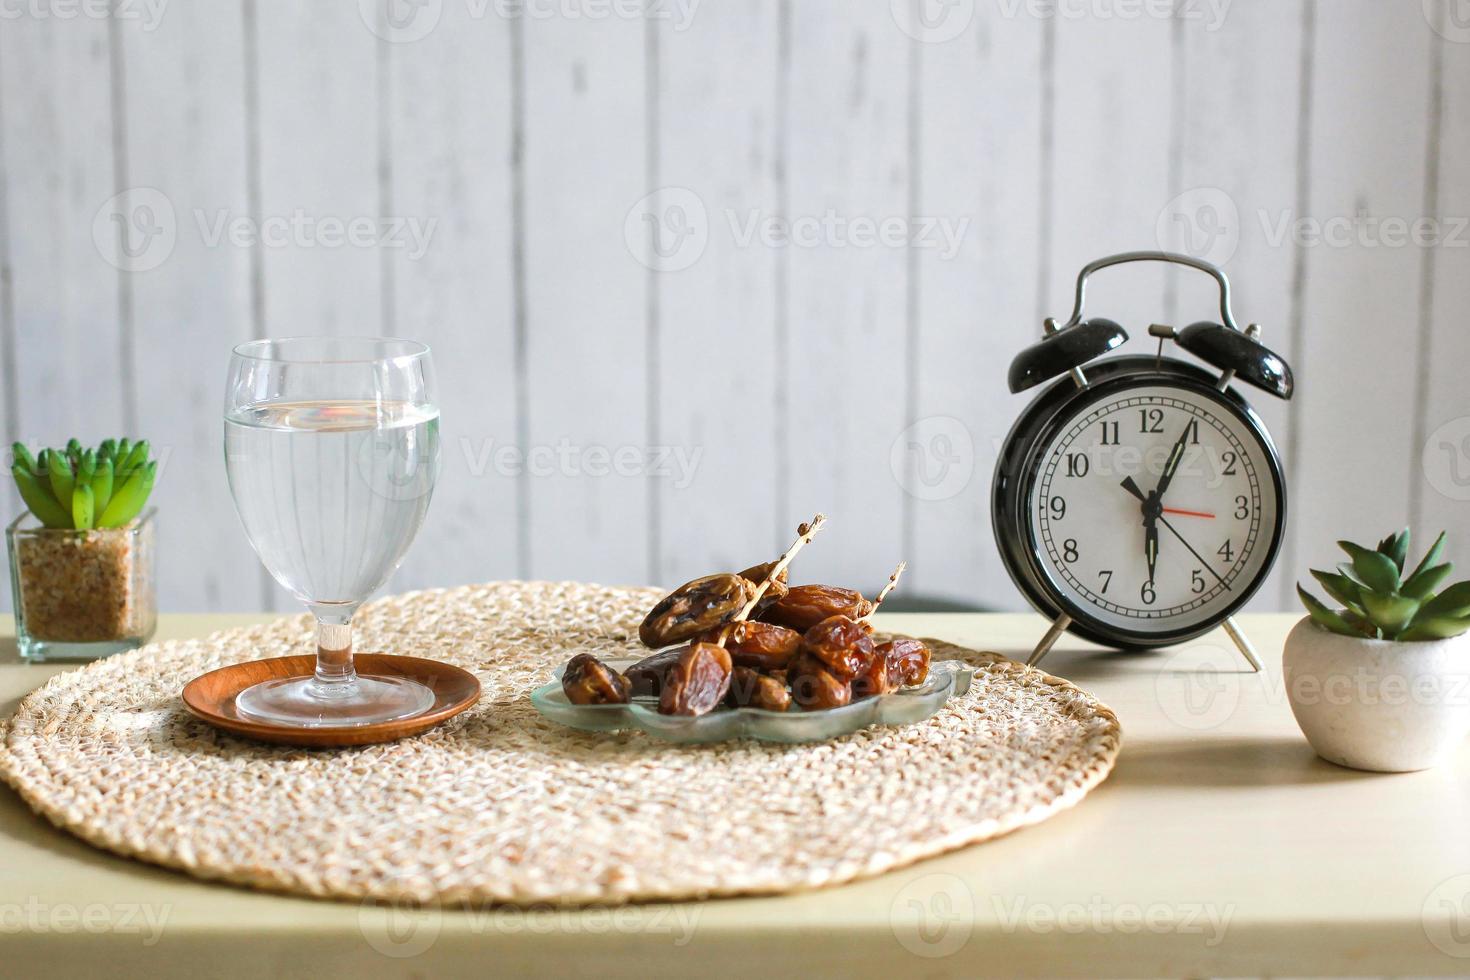 glas trinkwasser und datteln mit wecker, der 6 uhr zeigt. traditionelles ramadan, iftar-zeitkonzept foto